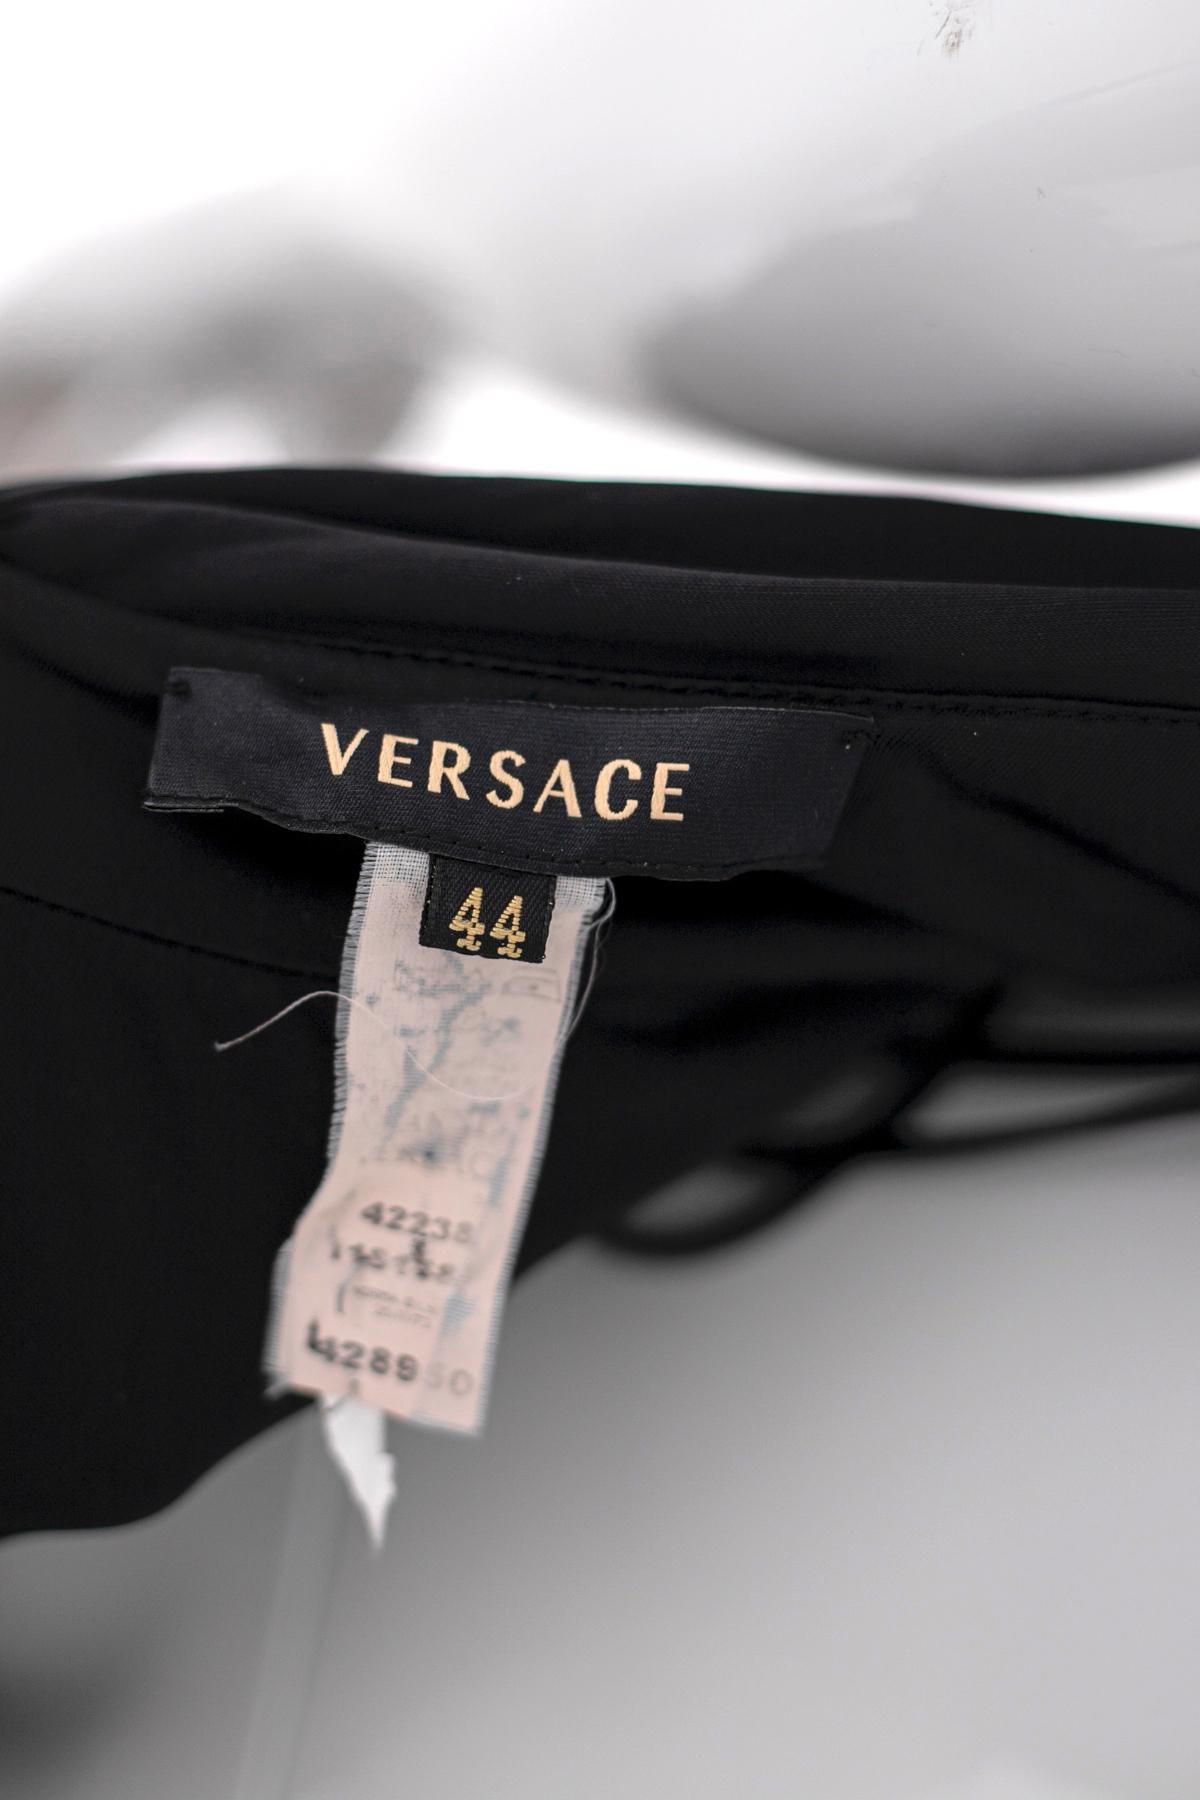 Magnifique robe de soirée courte noire, du célèbre designer Gianni Versace des années 1990, en Viscosa 100% très doux.
La robe a un dos ouvert et un décolleté de style américain fait avec une sangle en métal doré, dans la partie finale, derrière le